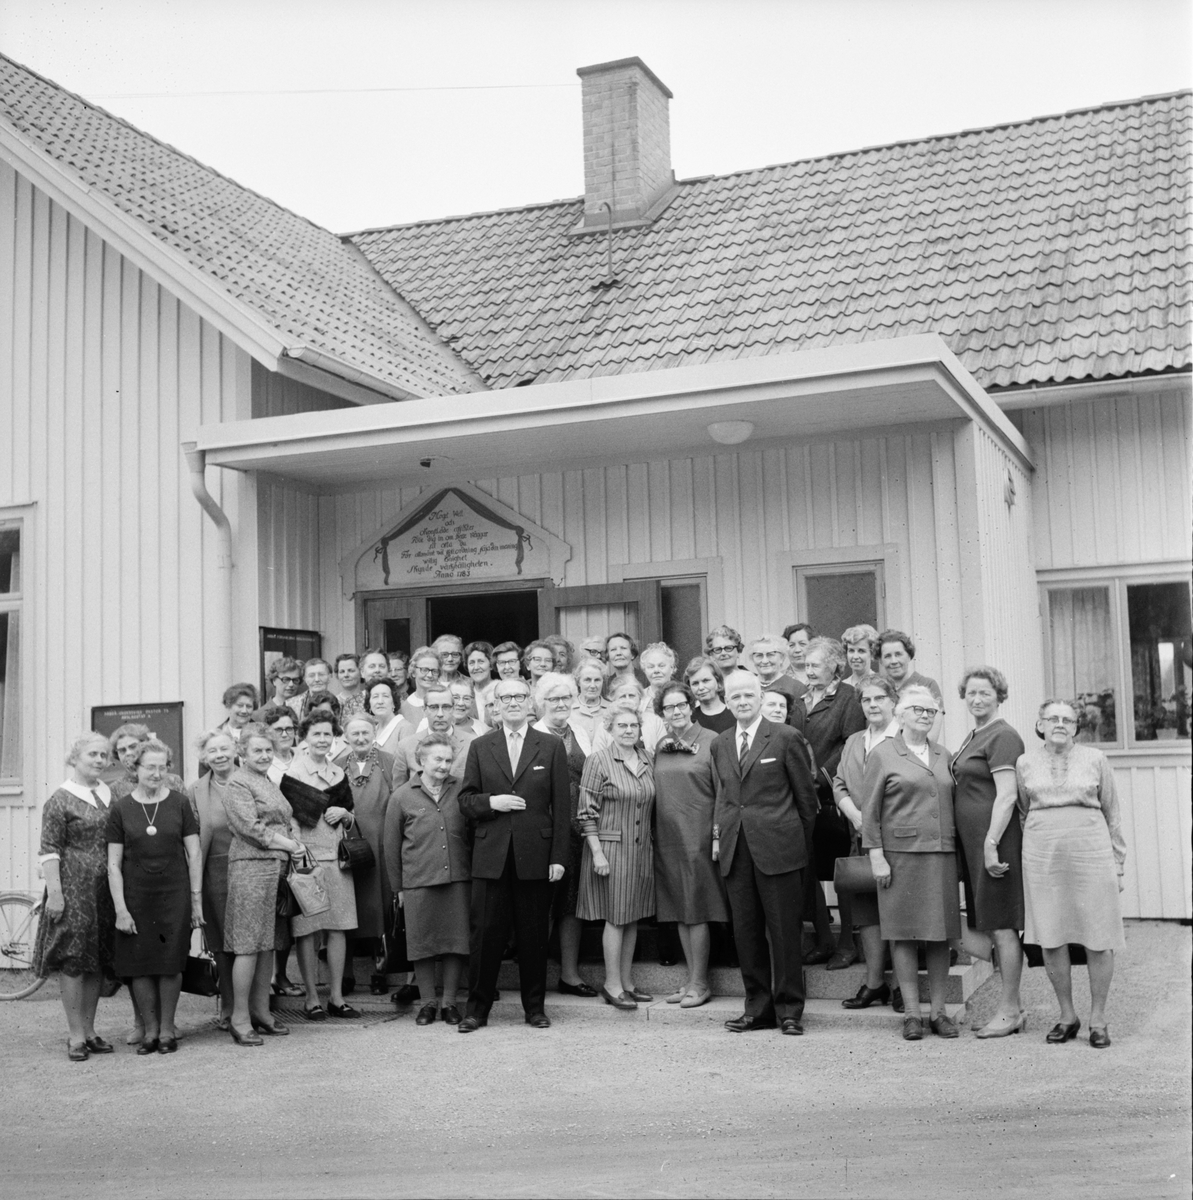 Arbrå,
Sykretsdag i sockenstugan,
8 Maj 1969
